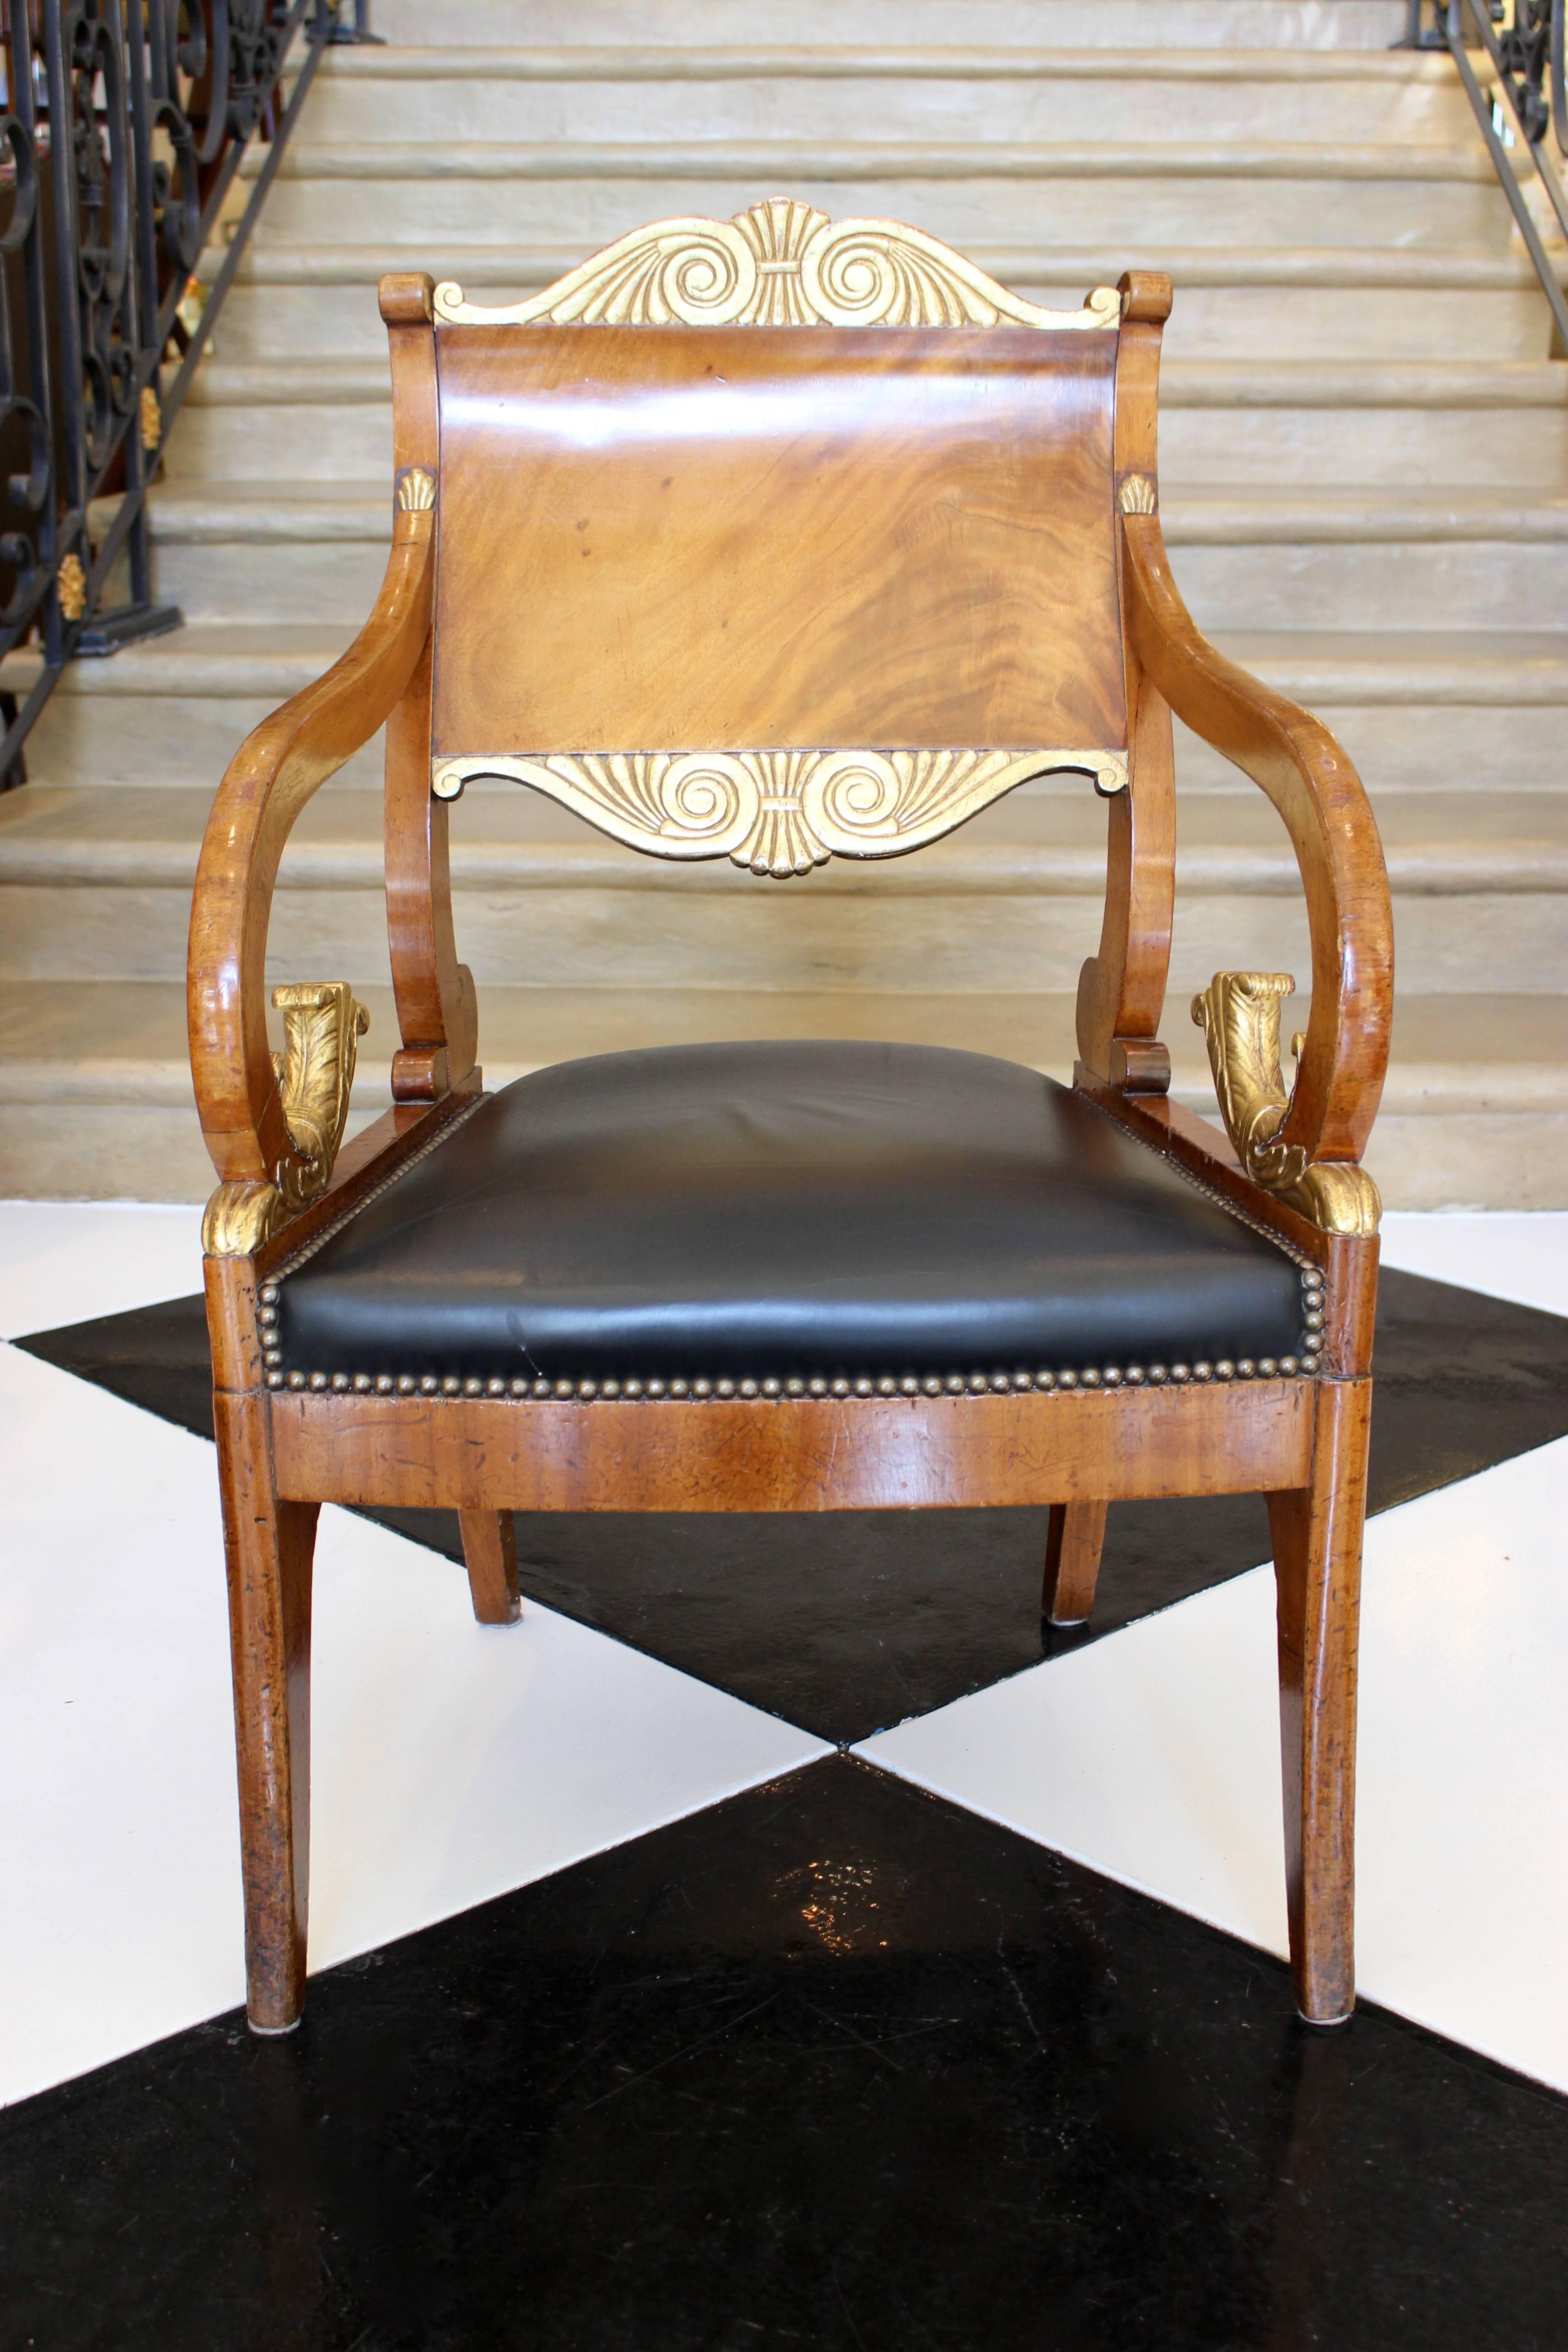 Paire de fauteuils russes d'époque néoclassique en acajou parcheminé et doré de la seconde moitié du XVIIIe siècle, avec des motifs de palmettes, des sièges tapissés de noir avec des garnitures de têtes de clous et des feuillages chantournés. Chacun